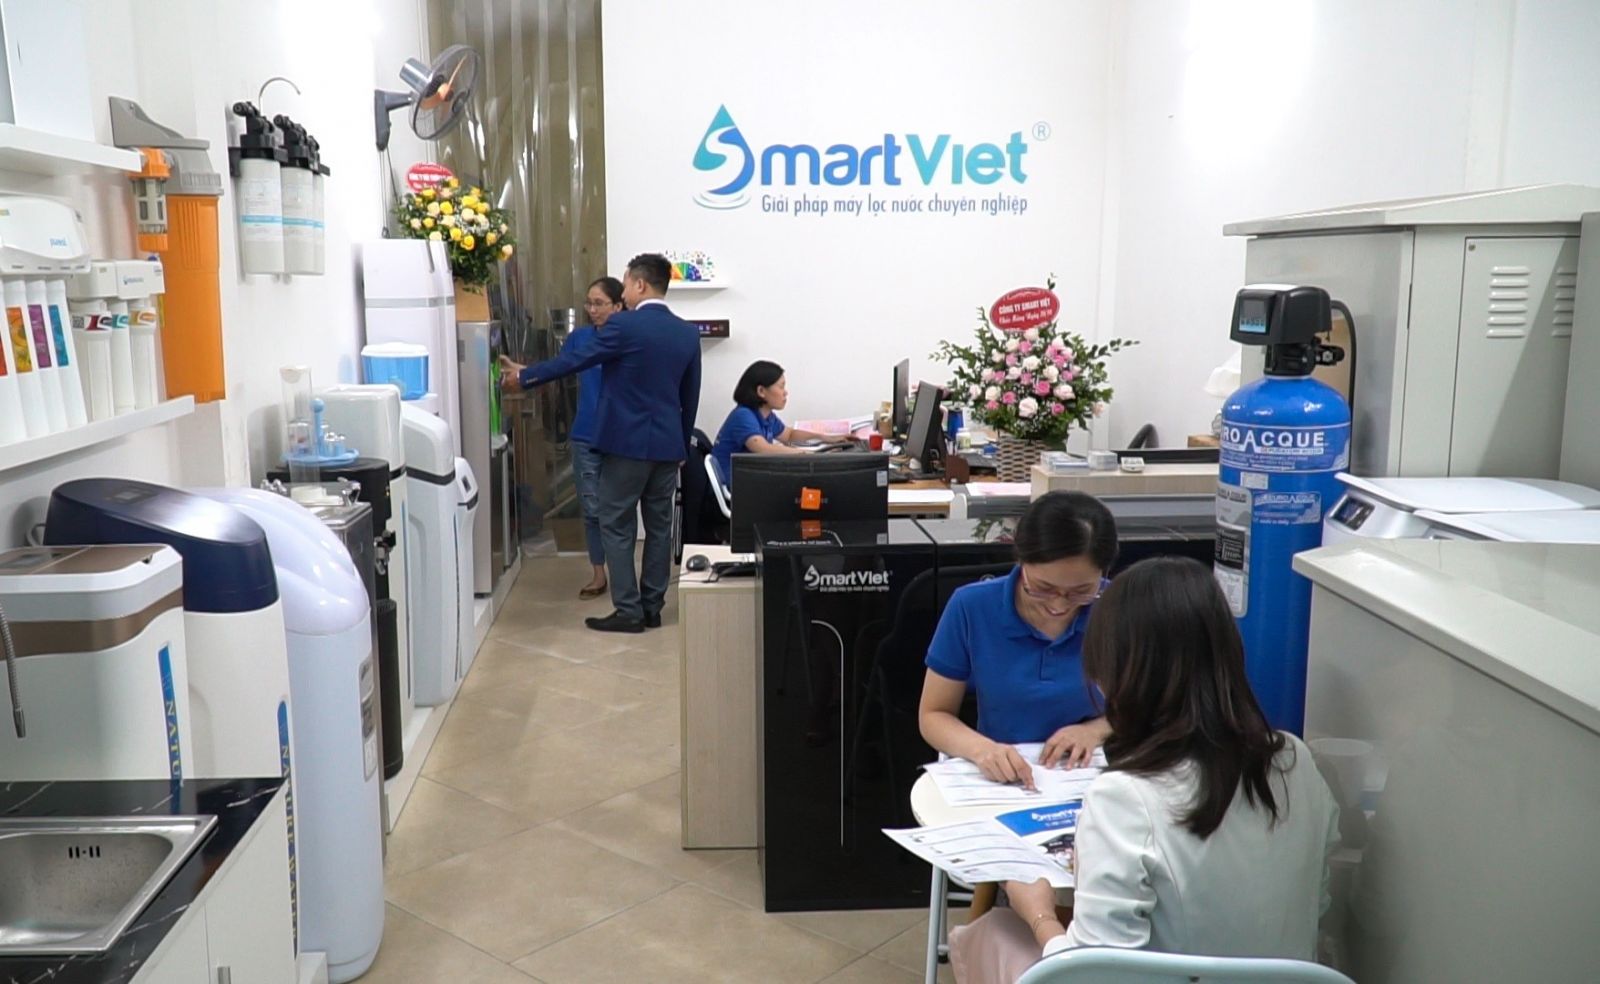 Smart Việt và hành trình vươn tới thành công